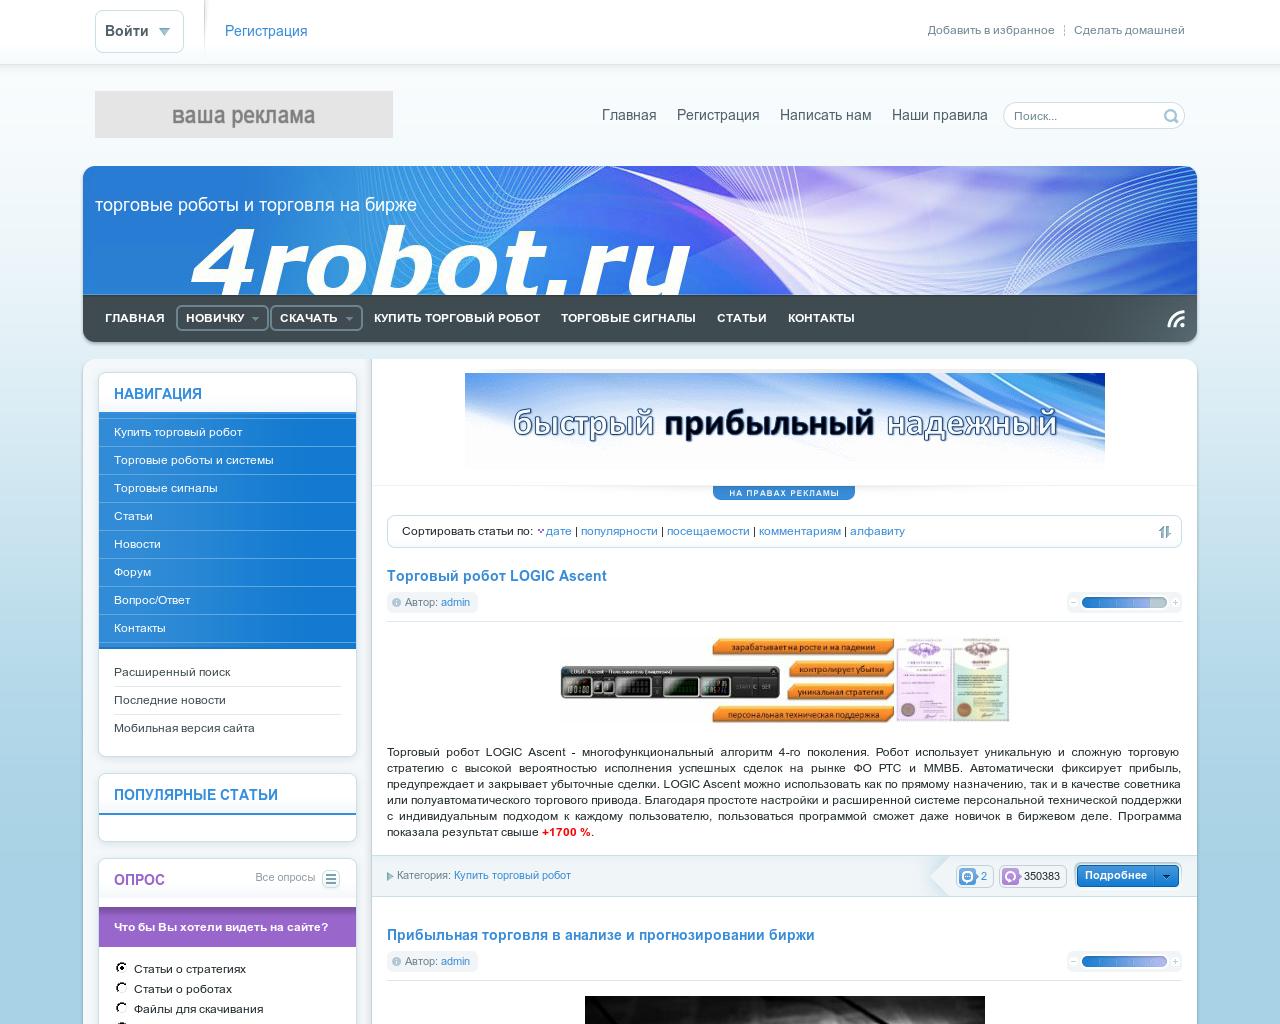 Изображение сайта 4robot.ru в разрешении 1280x1024